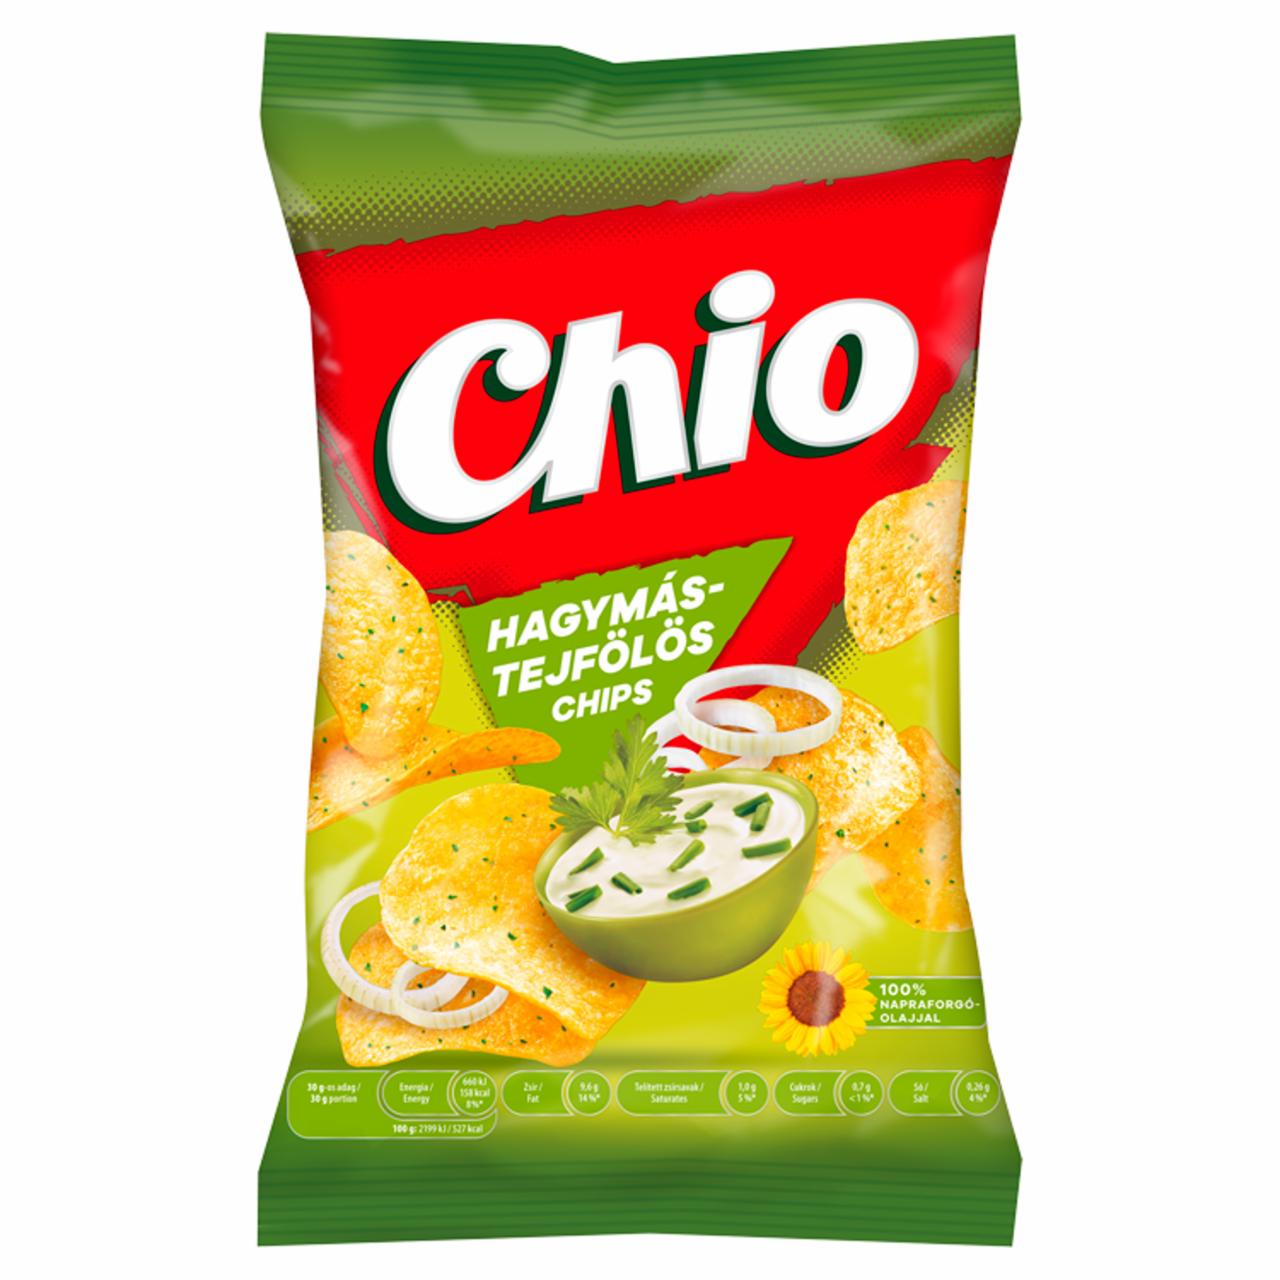 Képek - Chio hagymás-tejfölös chips 60 g